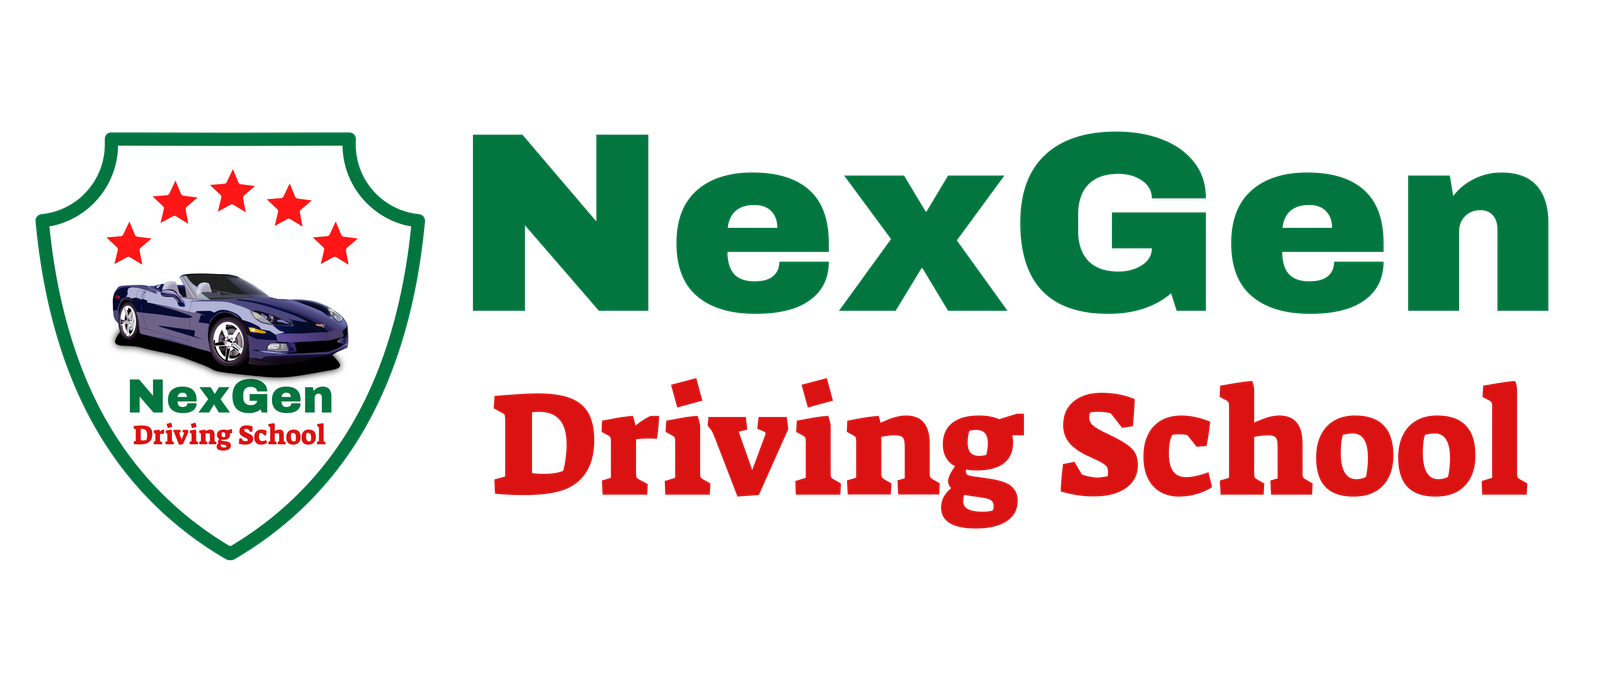 NexGen Driving School